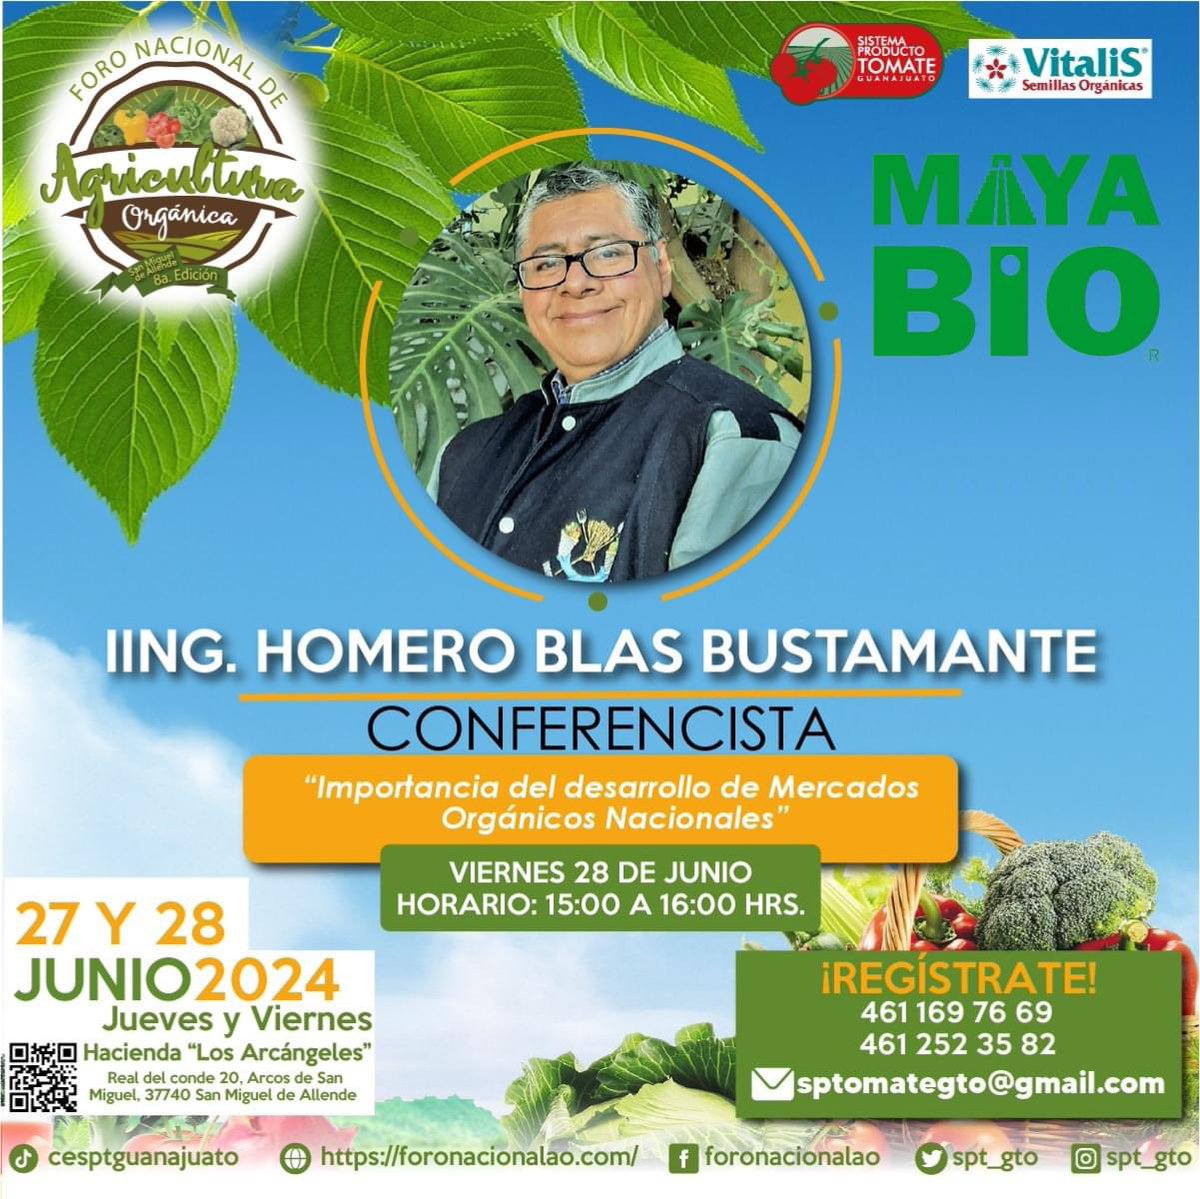 Cordial invitación: este 28 de junio impartiré una conferencia sobre los mercados locales y nacional de productos orgánicos. En #SanMigueldeAllende